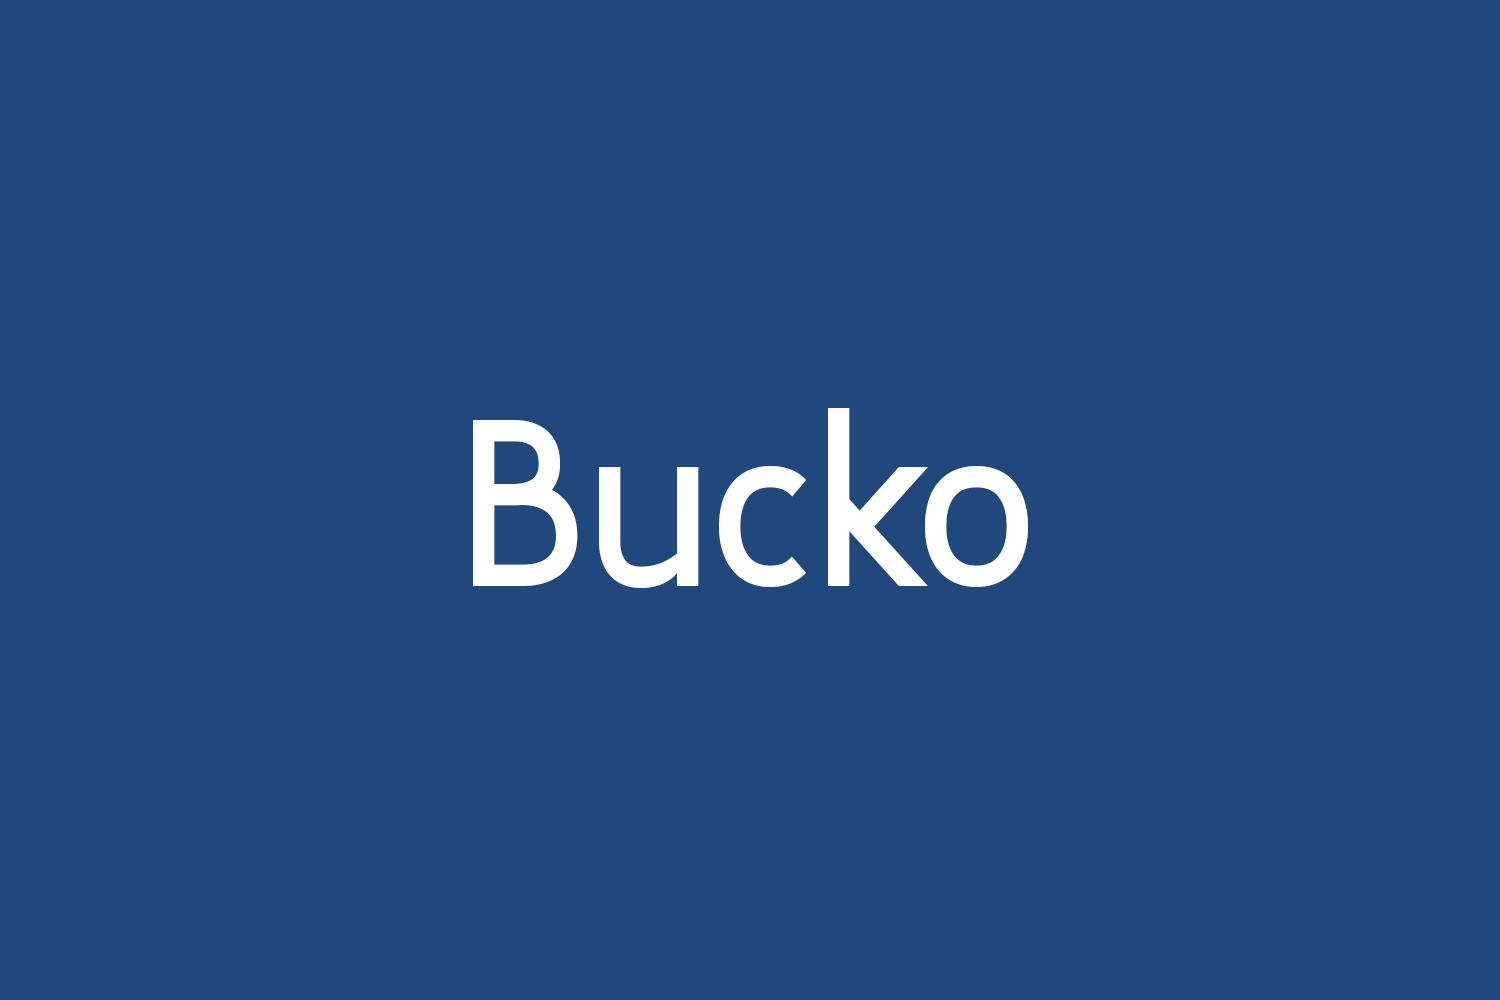 Bucko Free Font